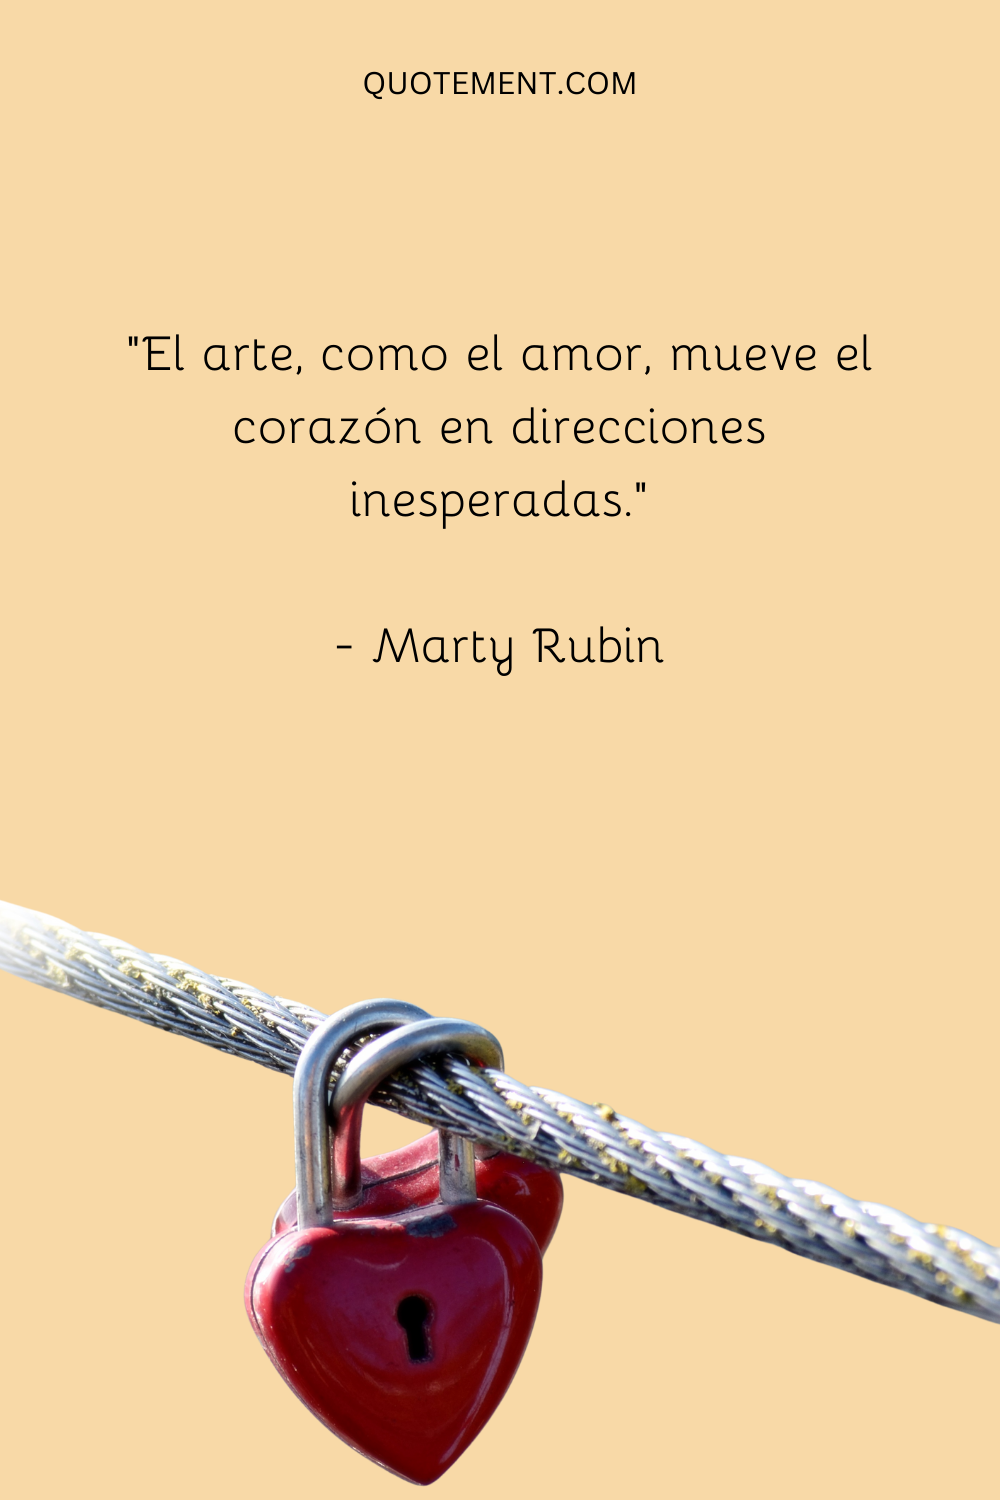 "El arte, como el amor, mueve el corazón en direcciones inesperadas". - Marty Rubin